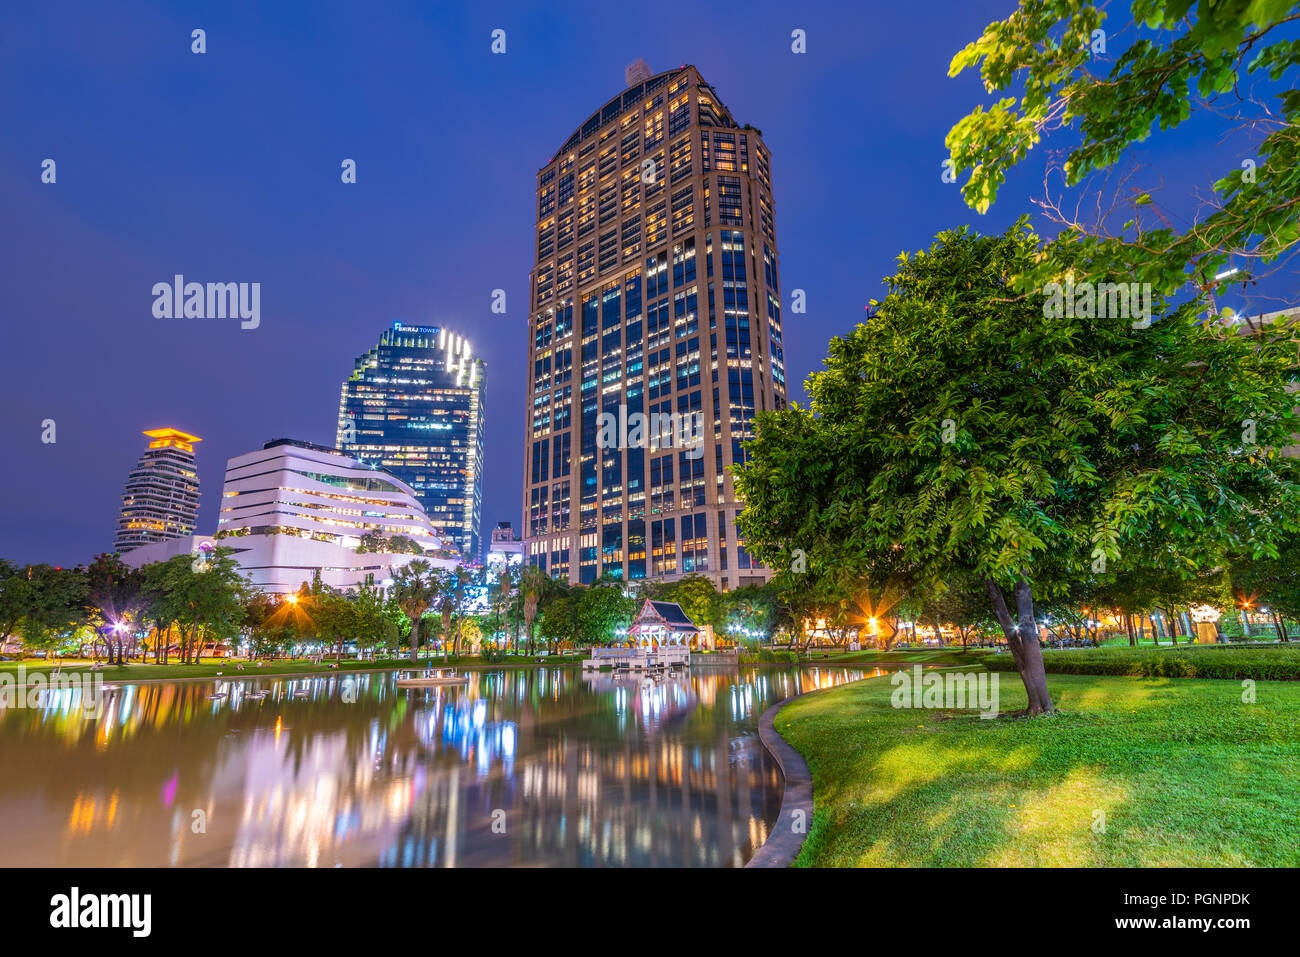 BANGKOK, THAILAND - JULY 16: This is a night view of Benchasiri Park lake and city buildings on July 16, 2018 in Bangkok Stock Photo